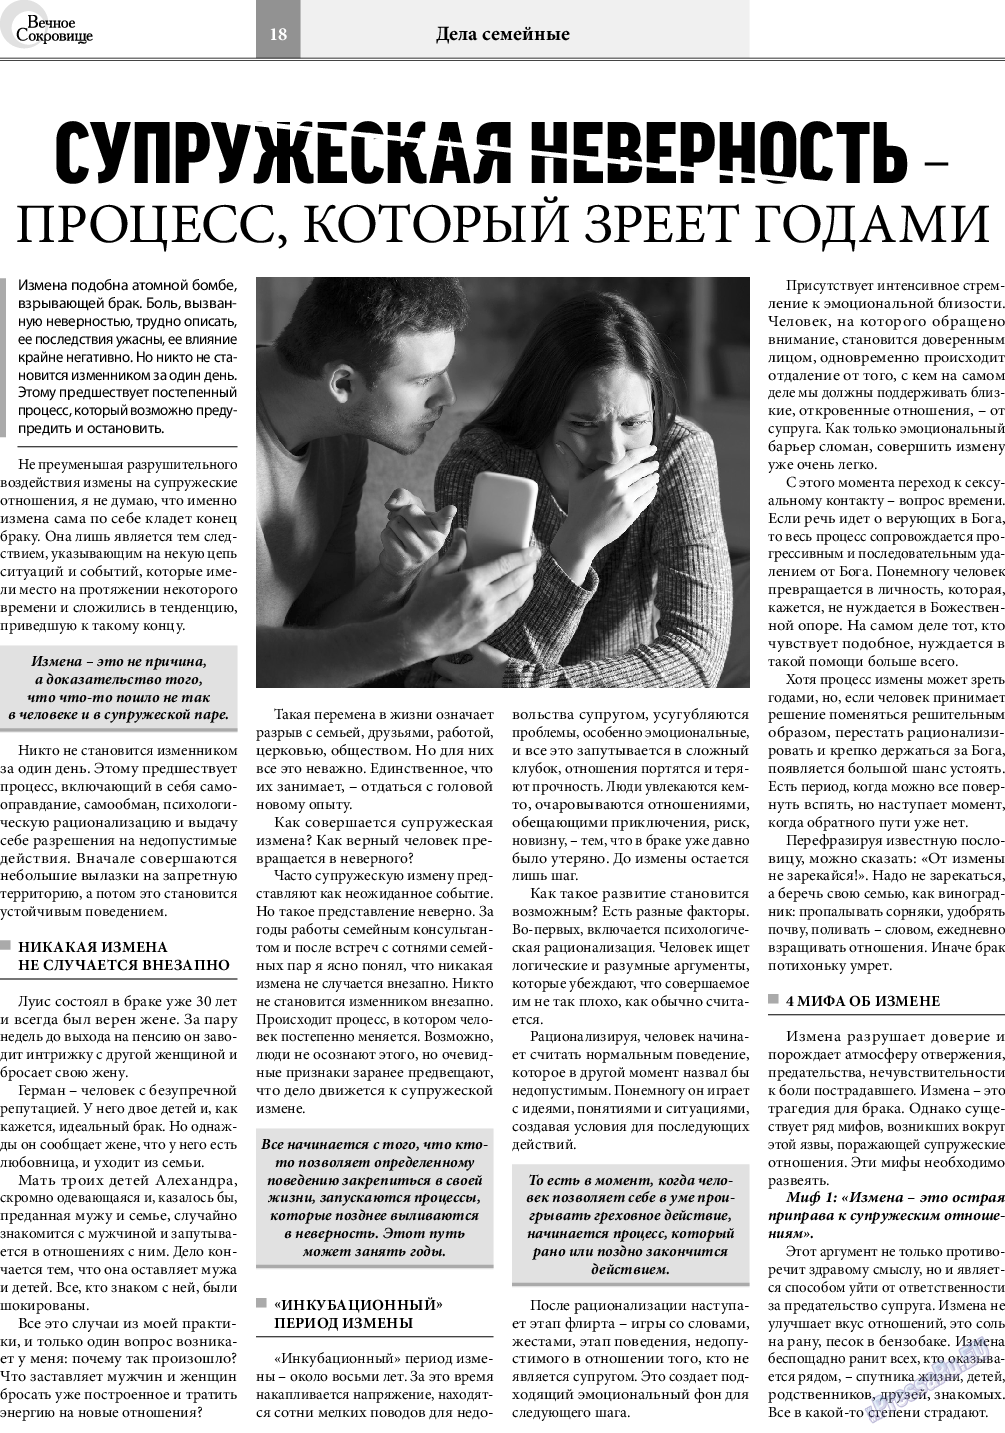 Вечное сокровище, газета. 2020 №5 стр.18